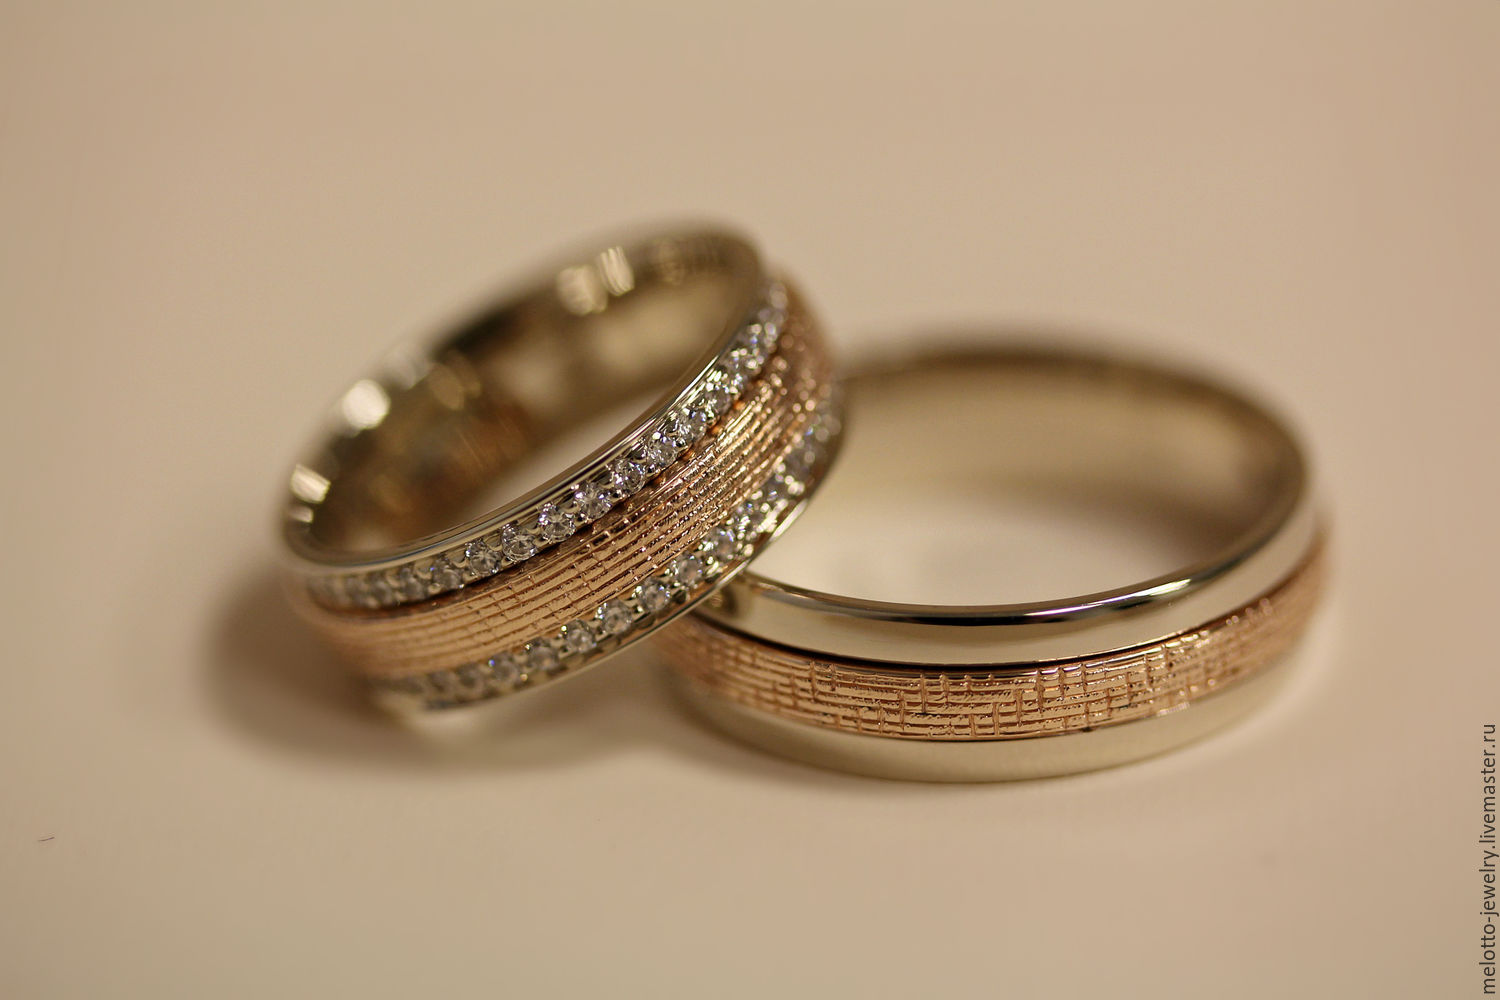 Обручальное кольцо в кольце